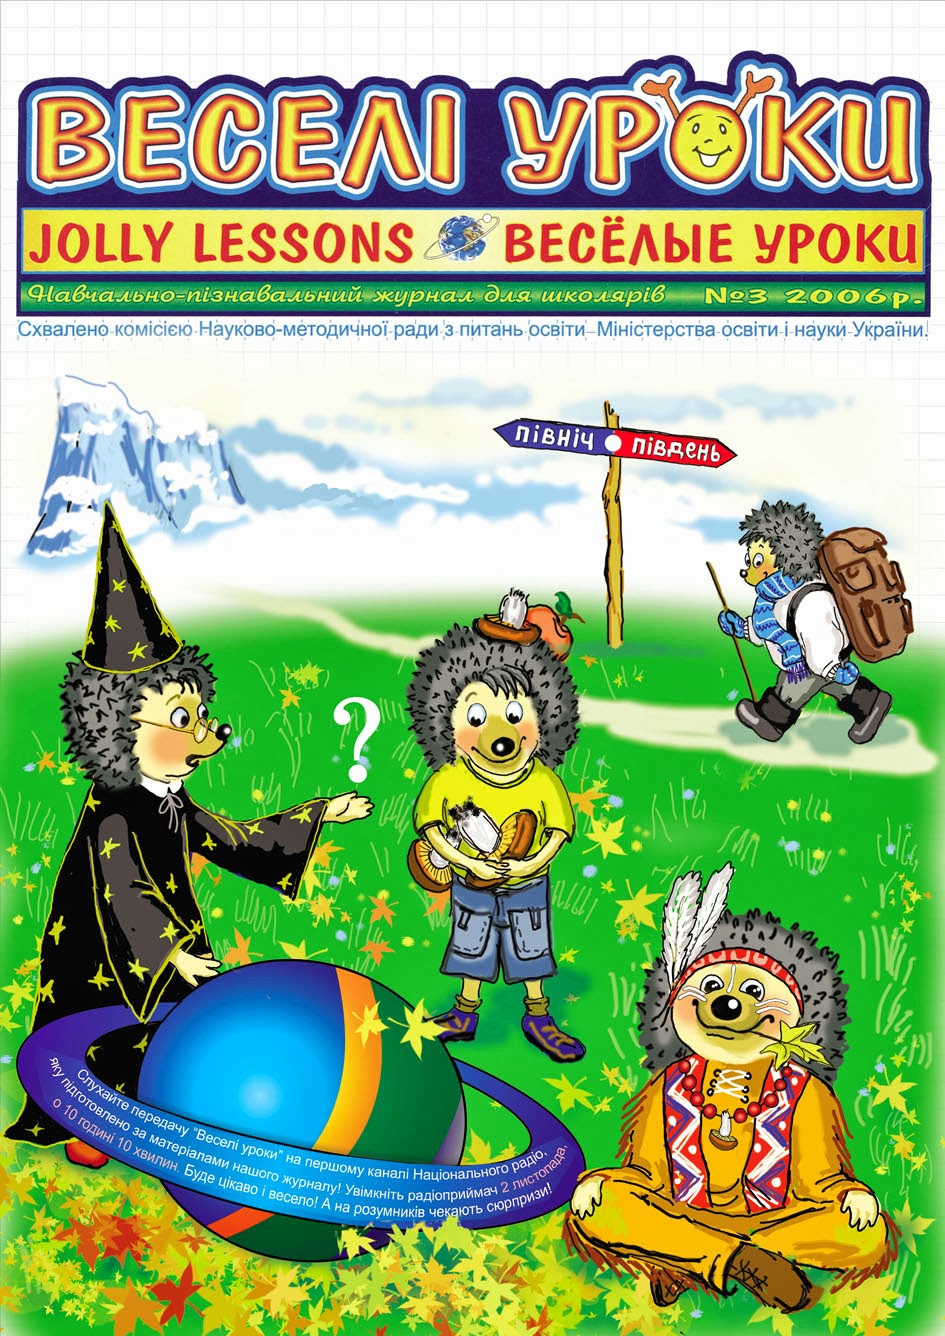 Обложка для детского журнала